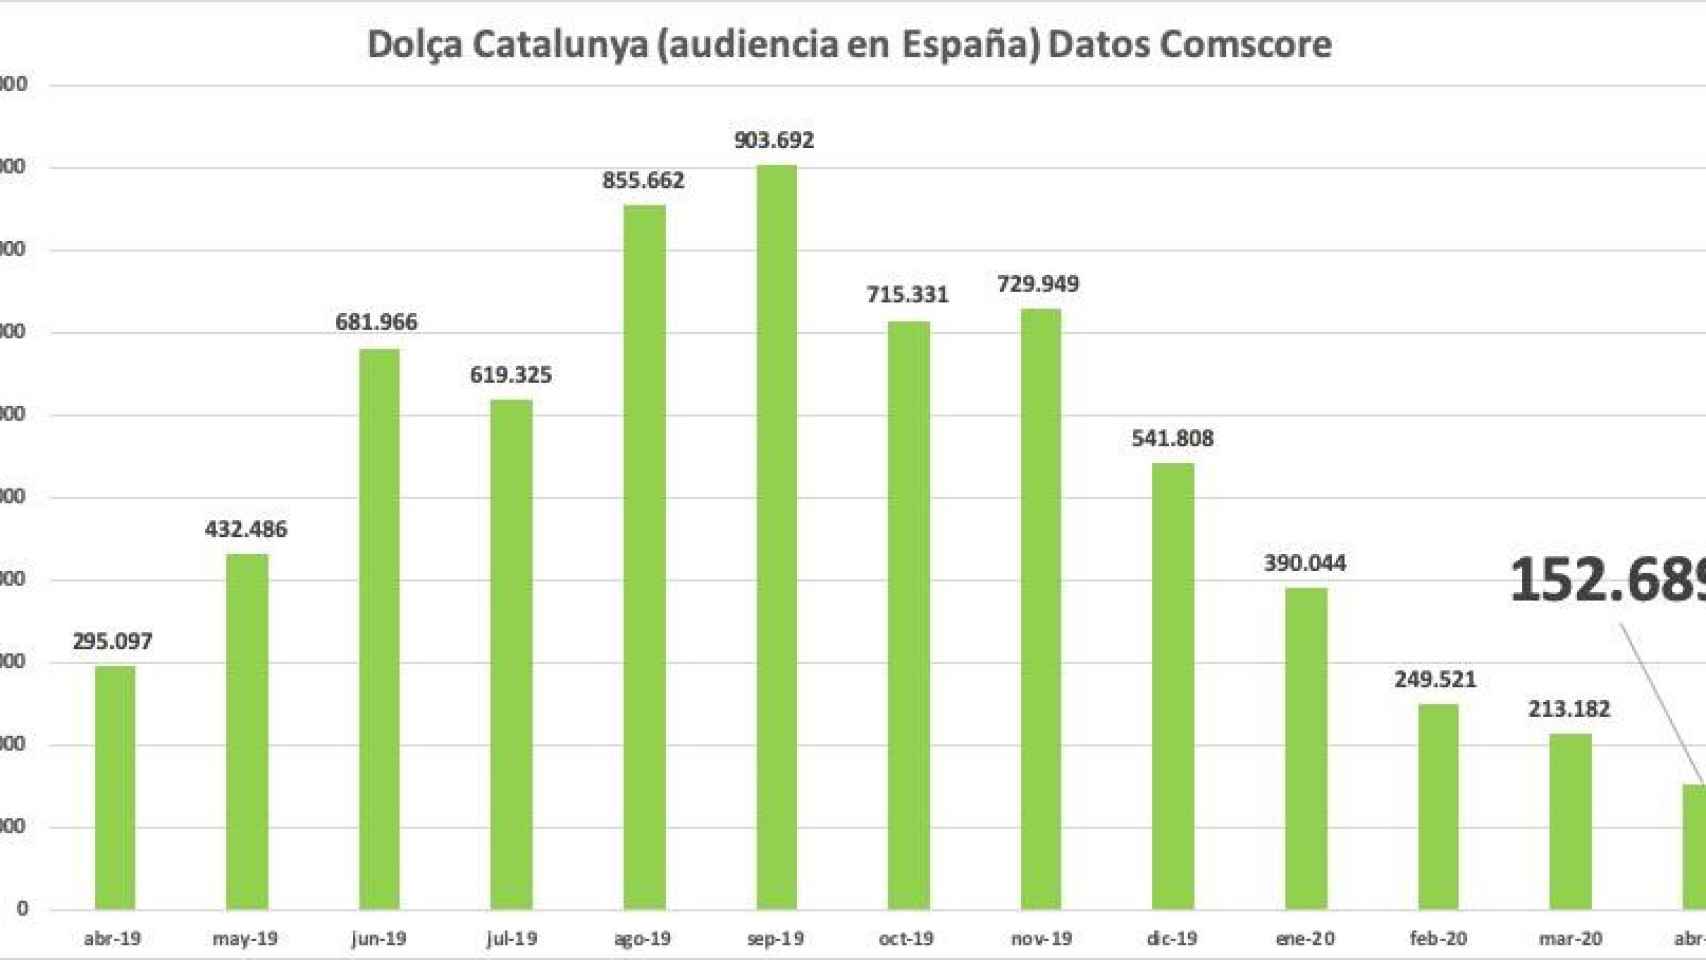 Evolución en los últimos meses de la audiencia del digital ultraderechista 'Dolça Catalunya' en España, según datos Comscore / CG